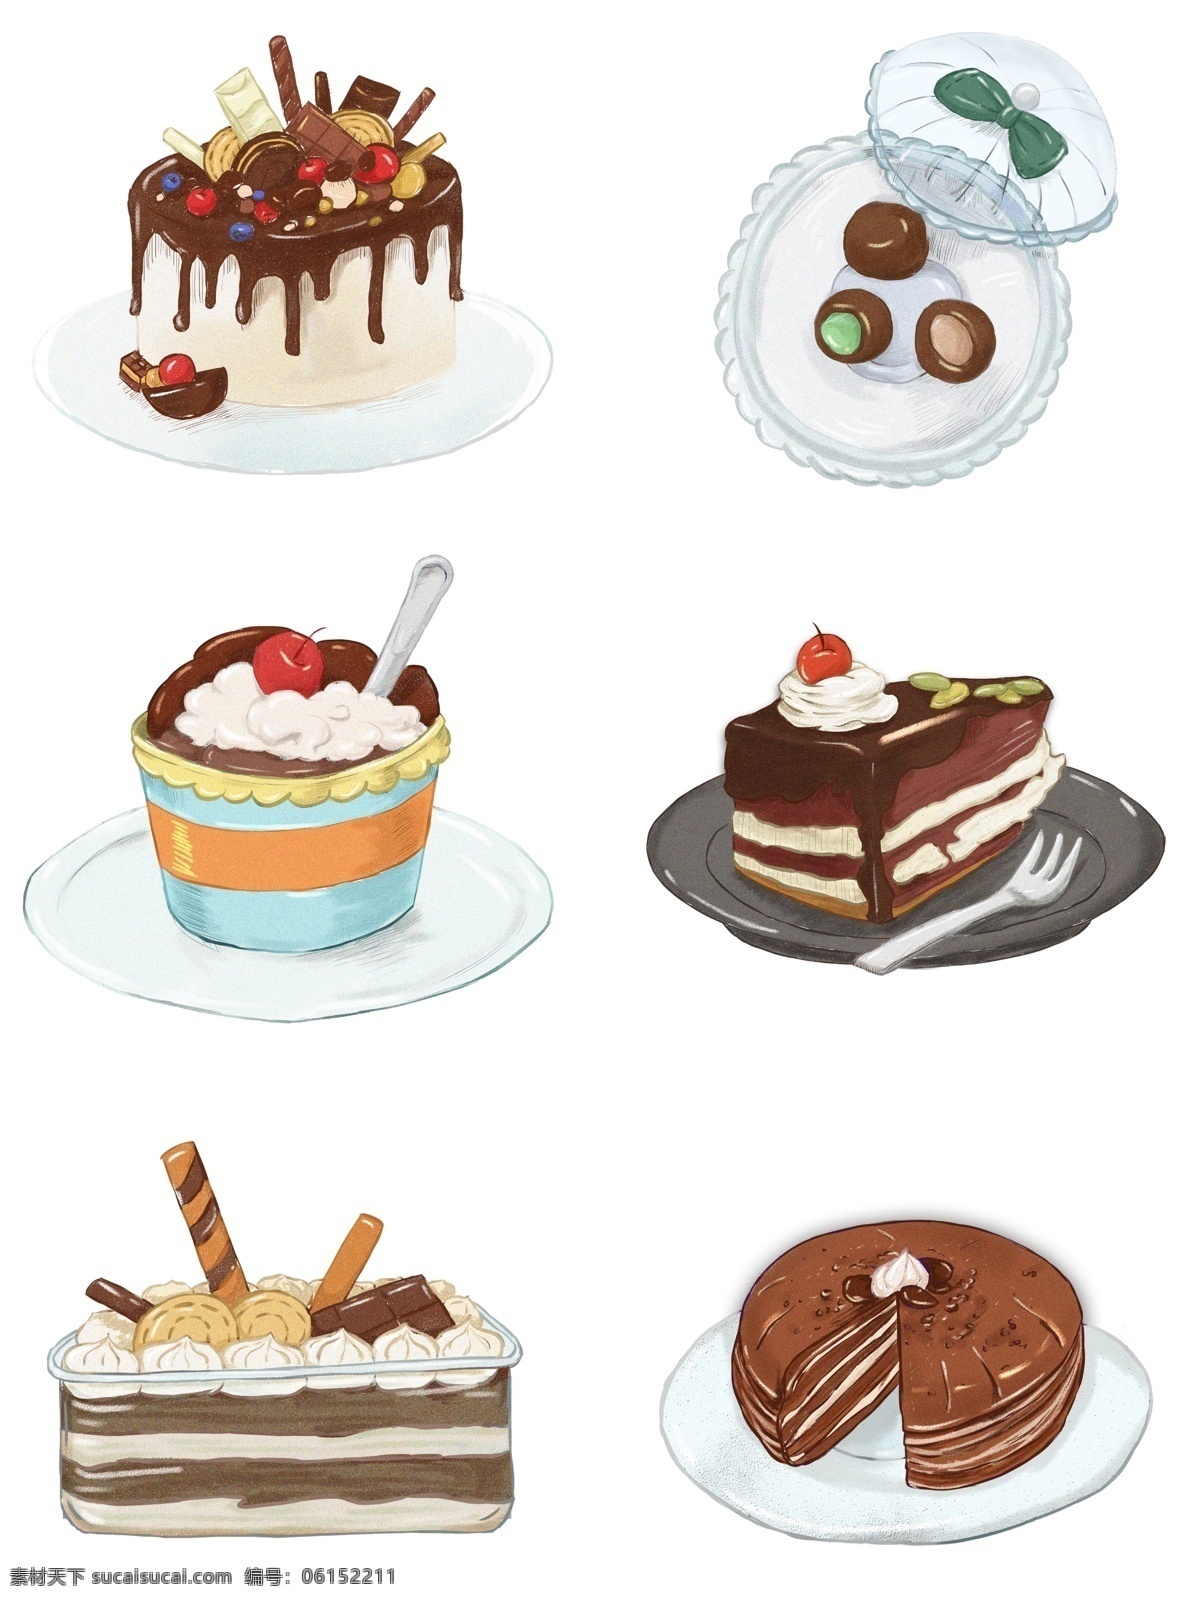 情人节 巧克力 美食 套 图 手绘 蜡笔 风 卡通 可爱 蛋糕 黑森林 纸杯蛋糕 甜食 千层蛋糕 生巧 巧克力盒子 奶油